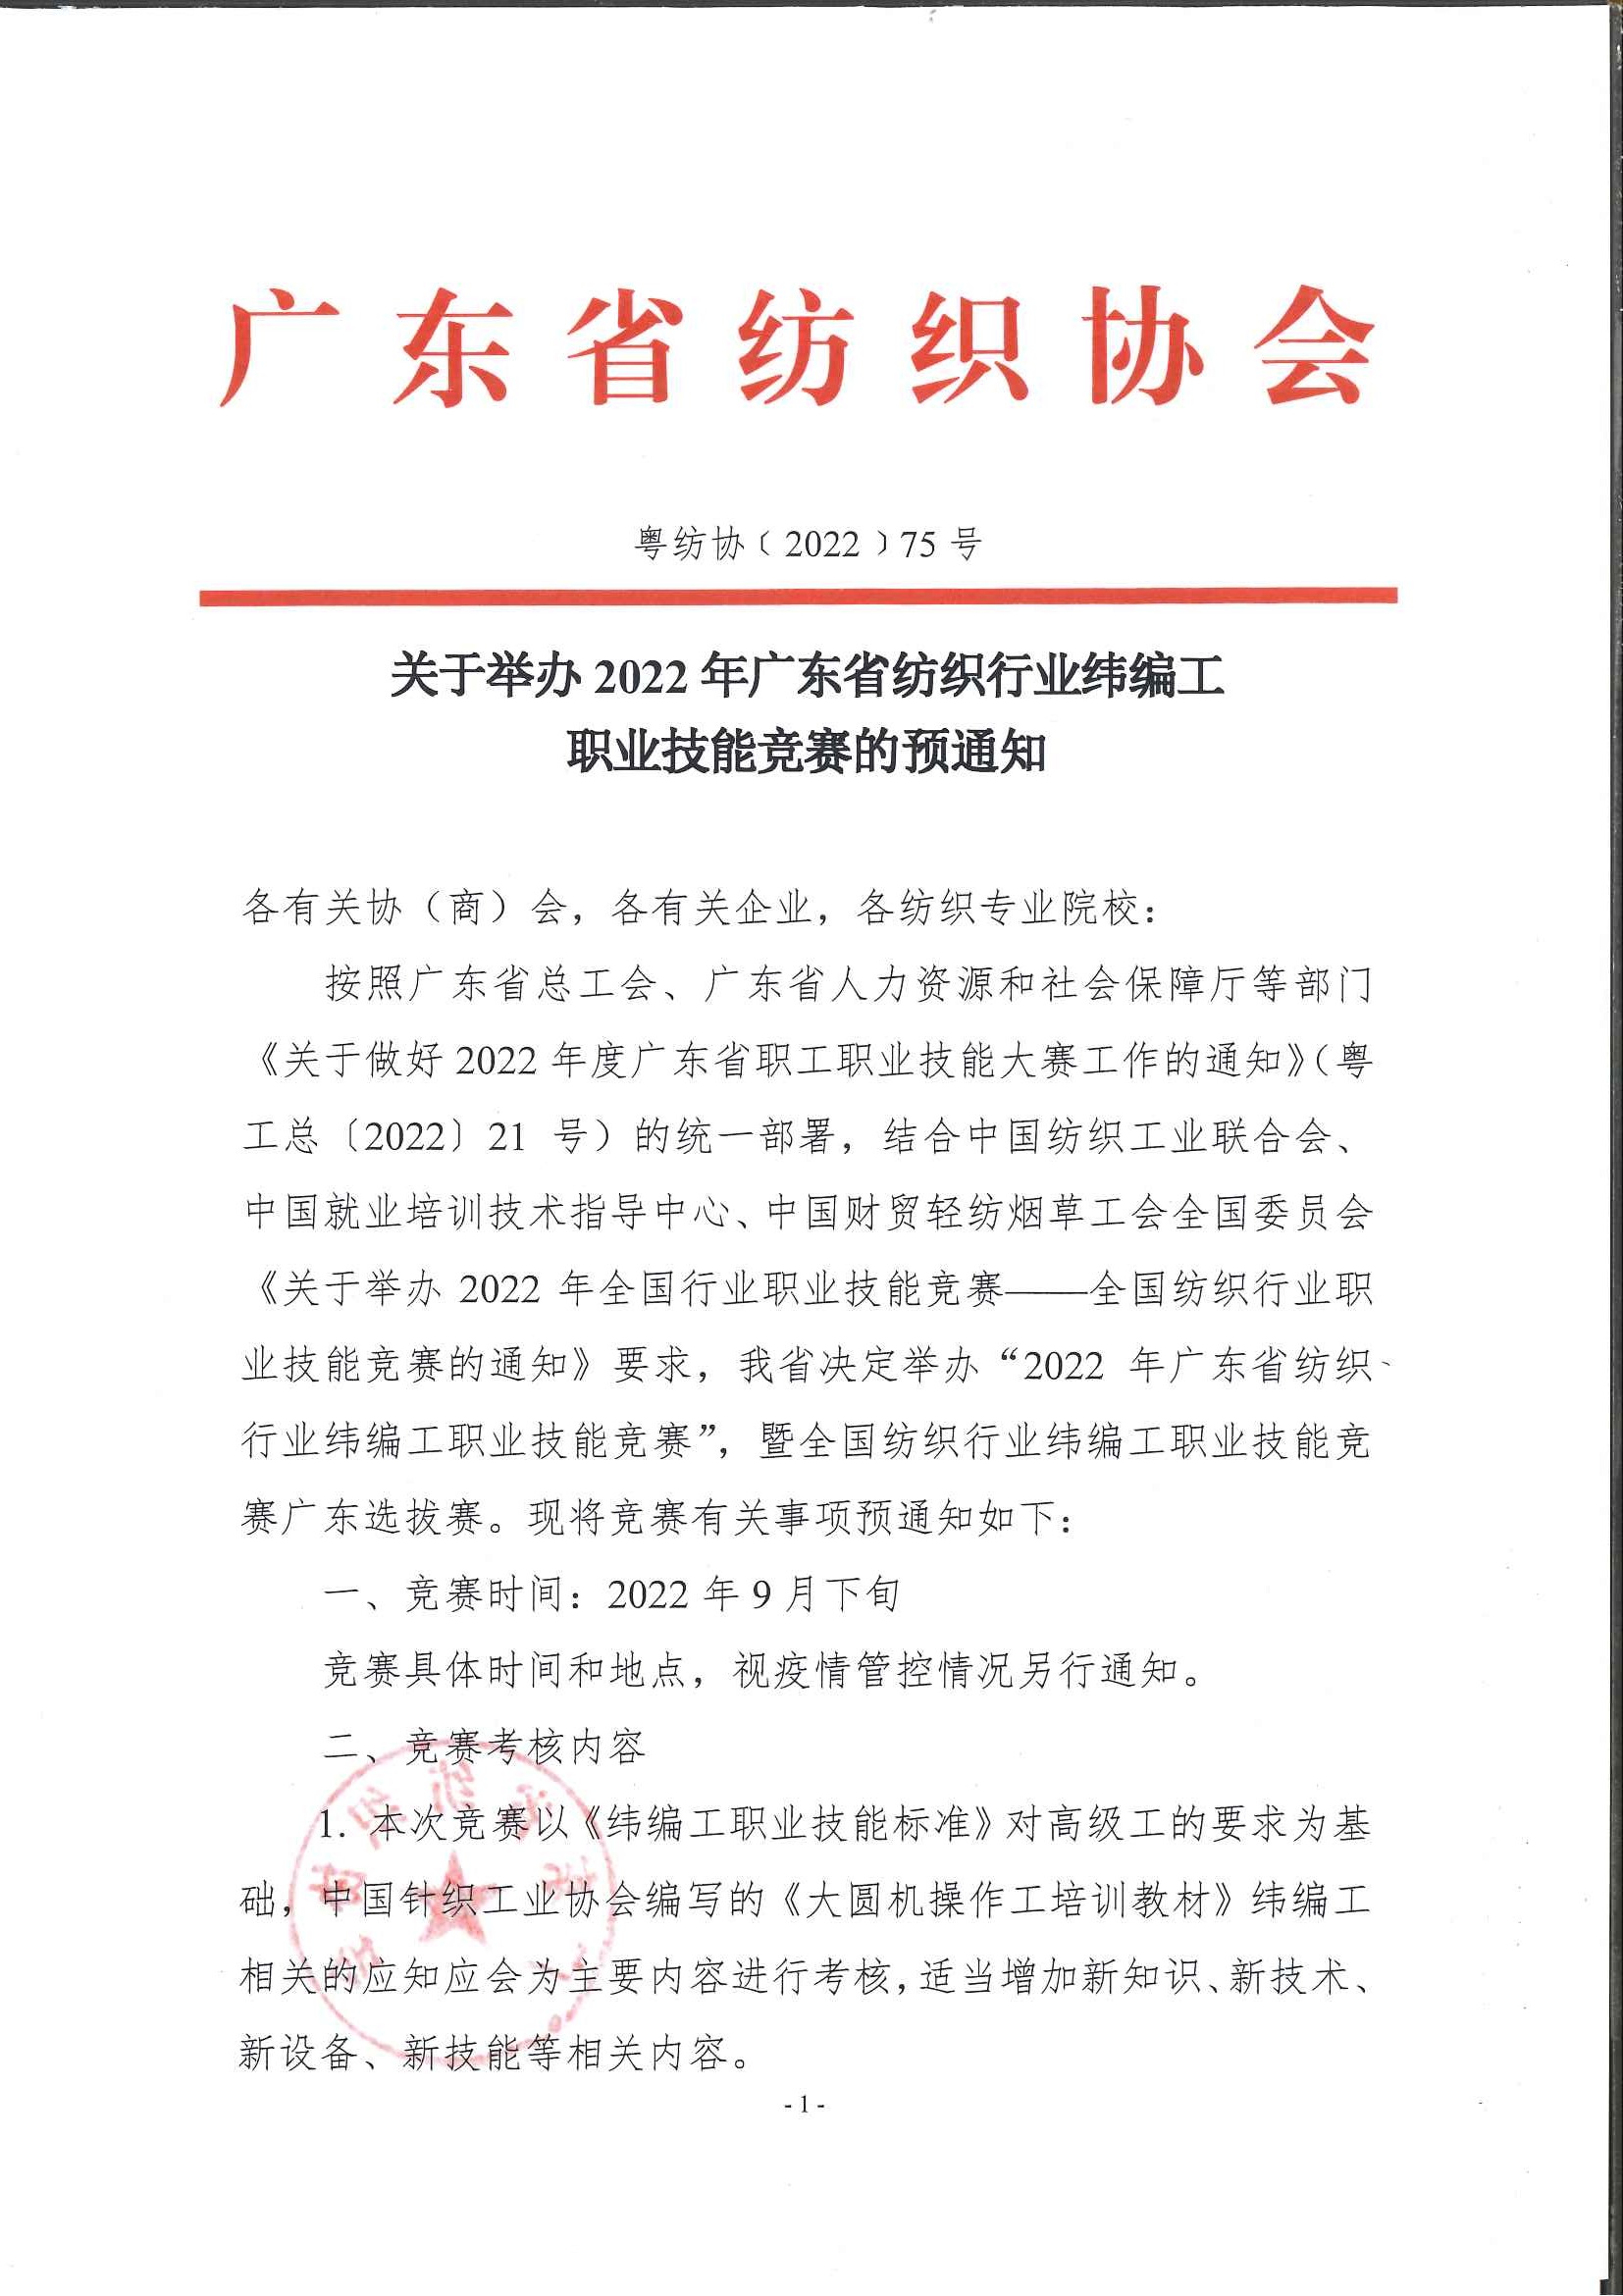 关于举办2022年广东省纺织行业纬编工职业技能竞赛的预通知_页面_1.jpg